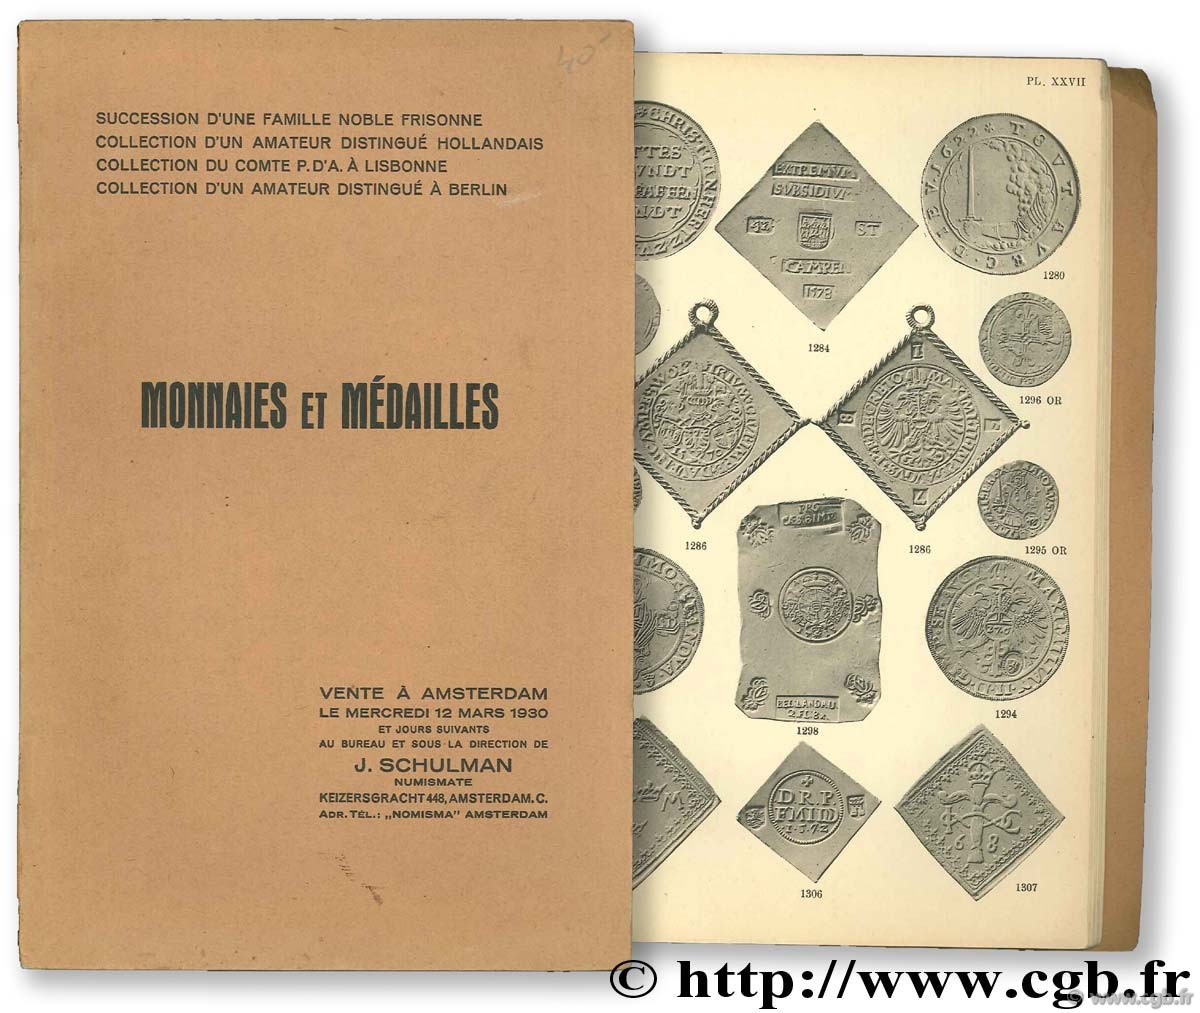 Monnaies et médailles 1930 SCHULMAN J.